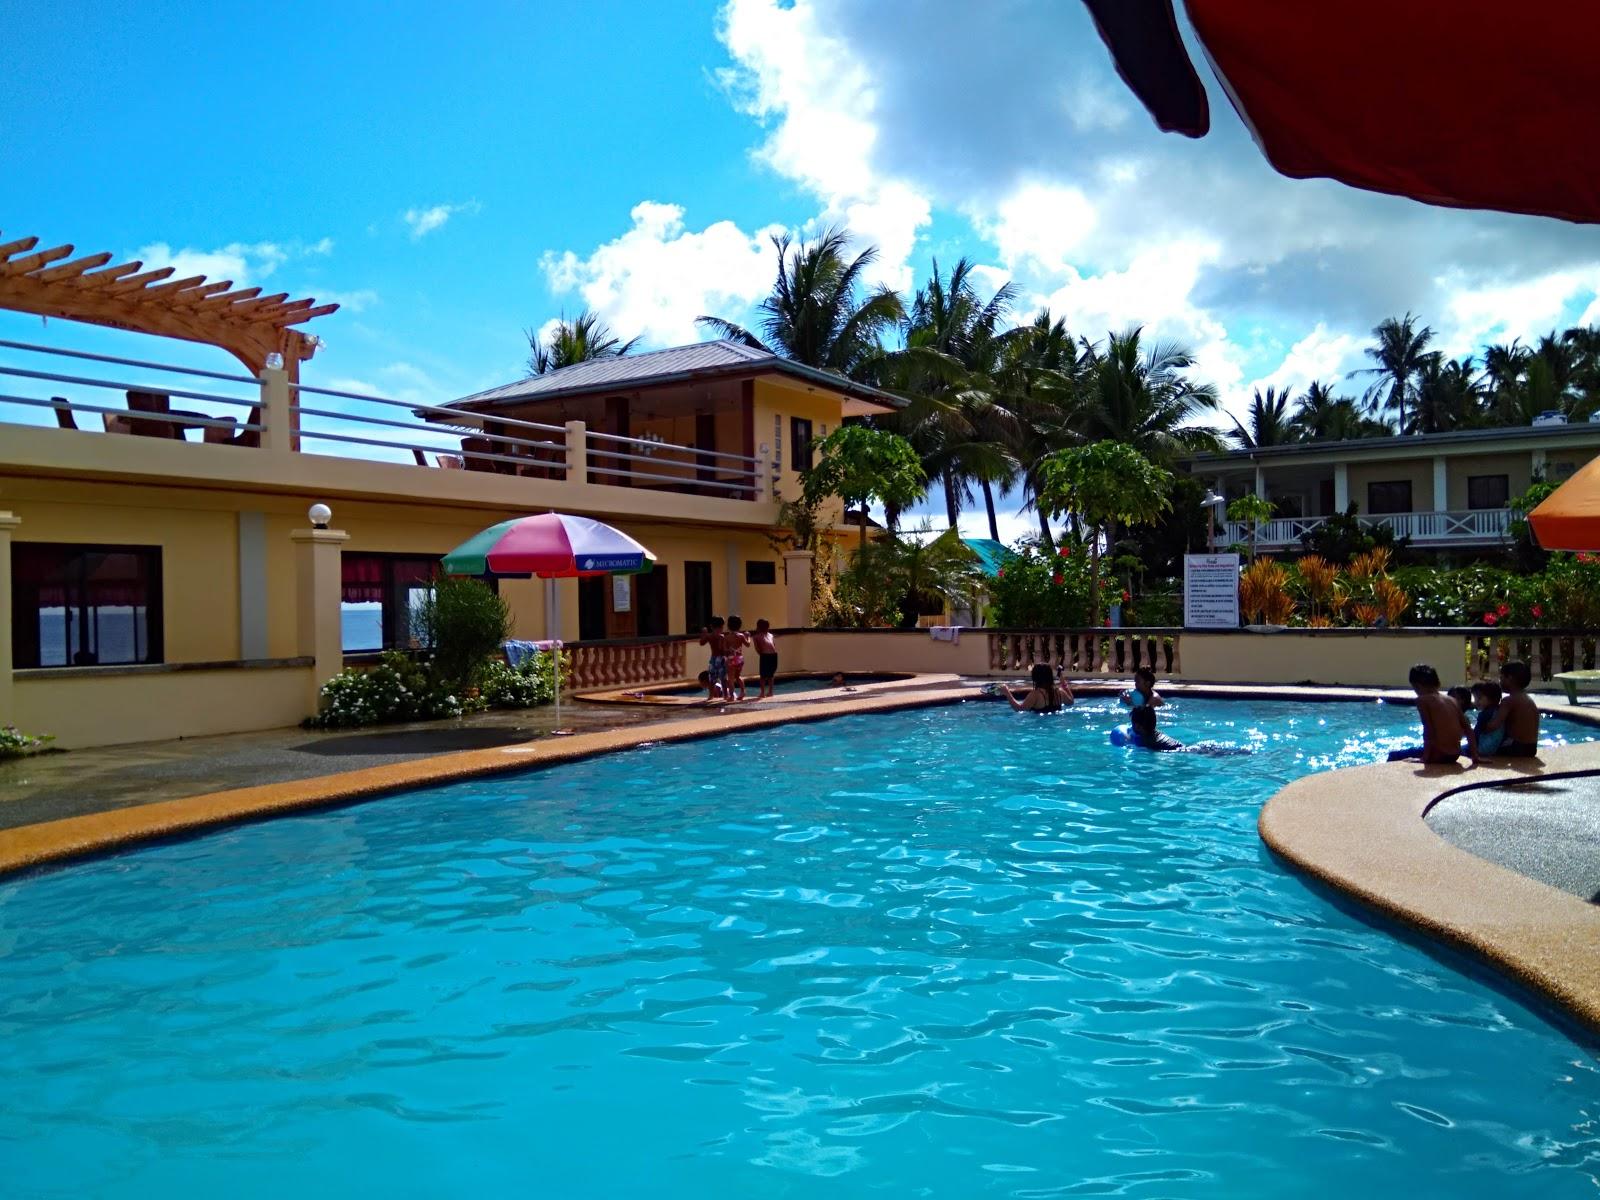 Sandee - Ilog Malino Beach Resort